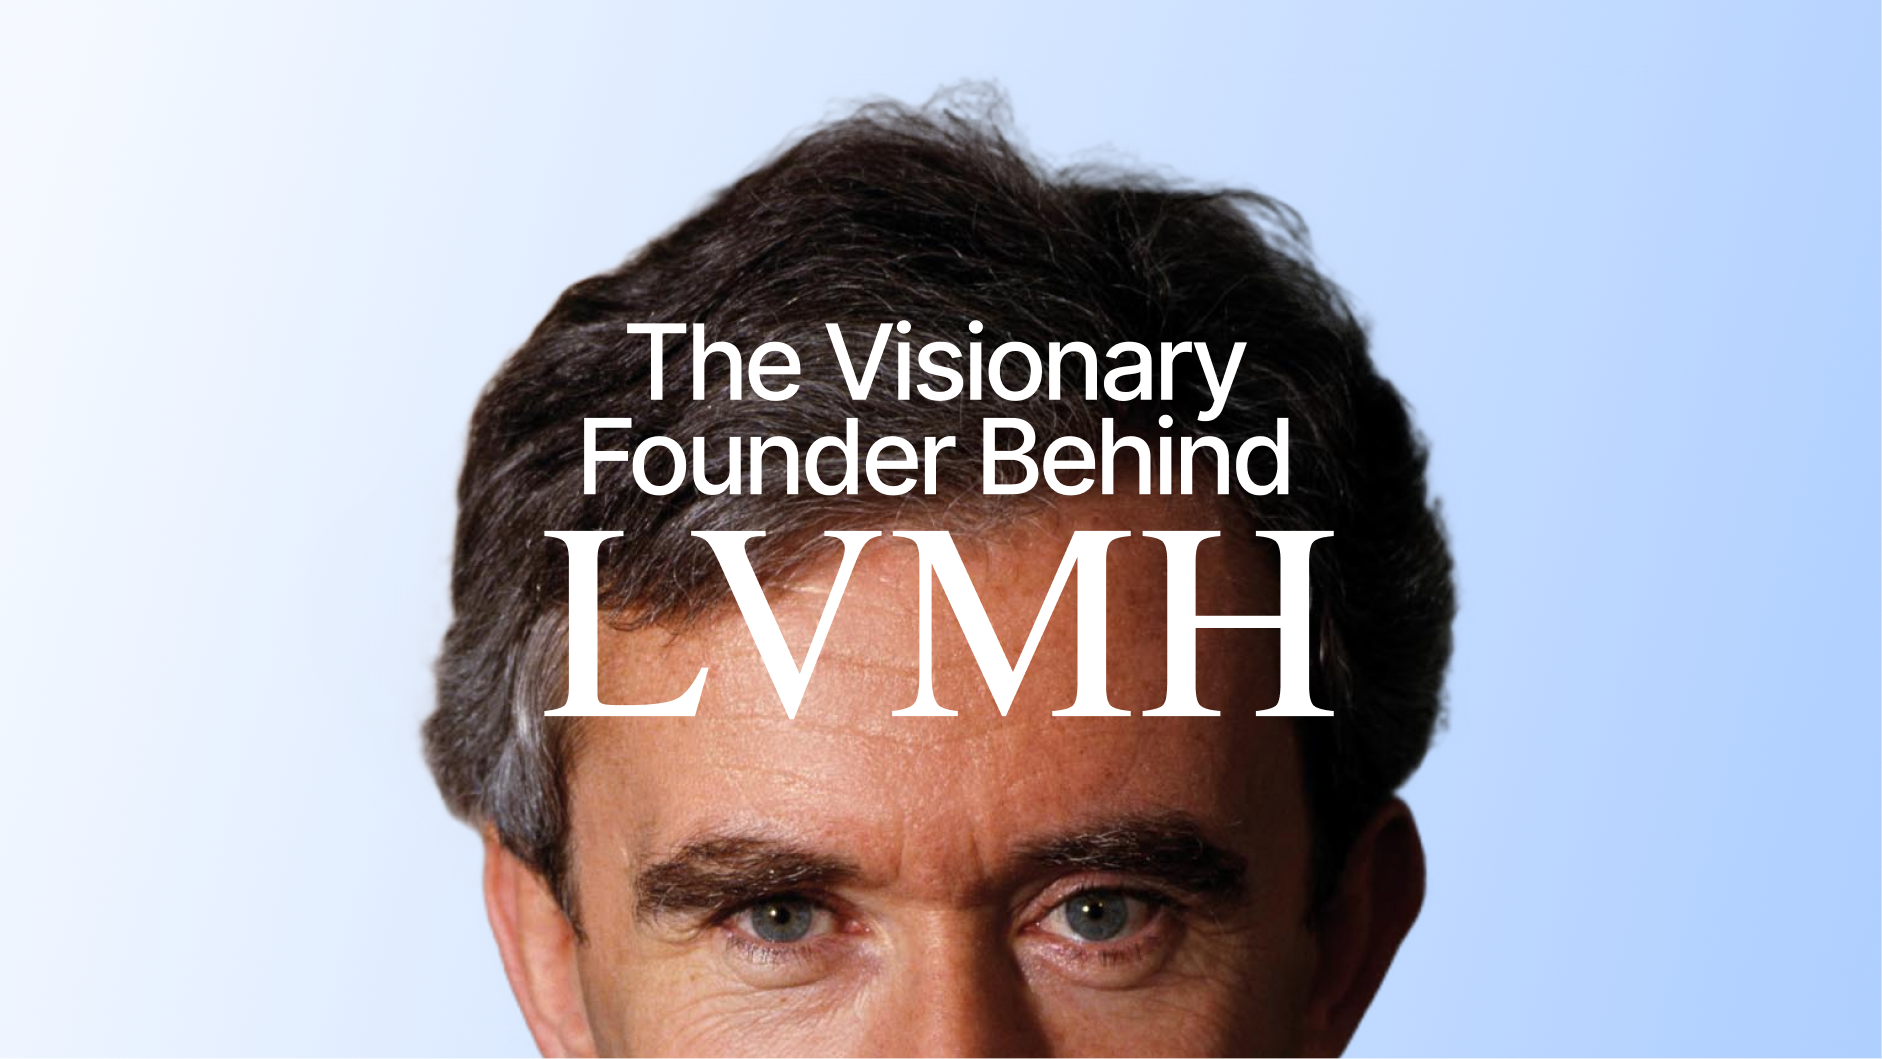 Bernard Arnault and LVMH - Moët Hennessy Louis Vuitton